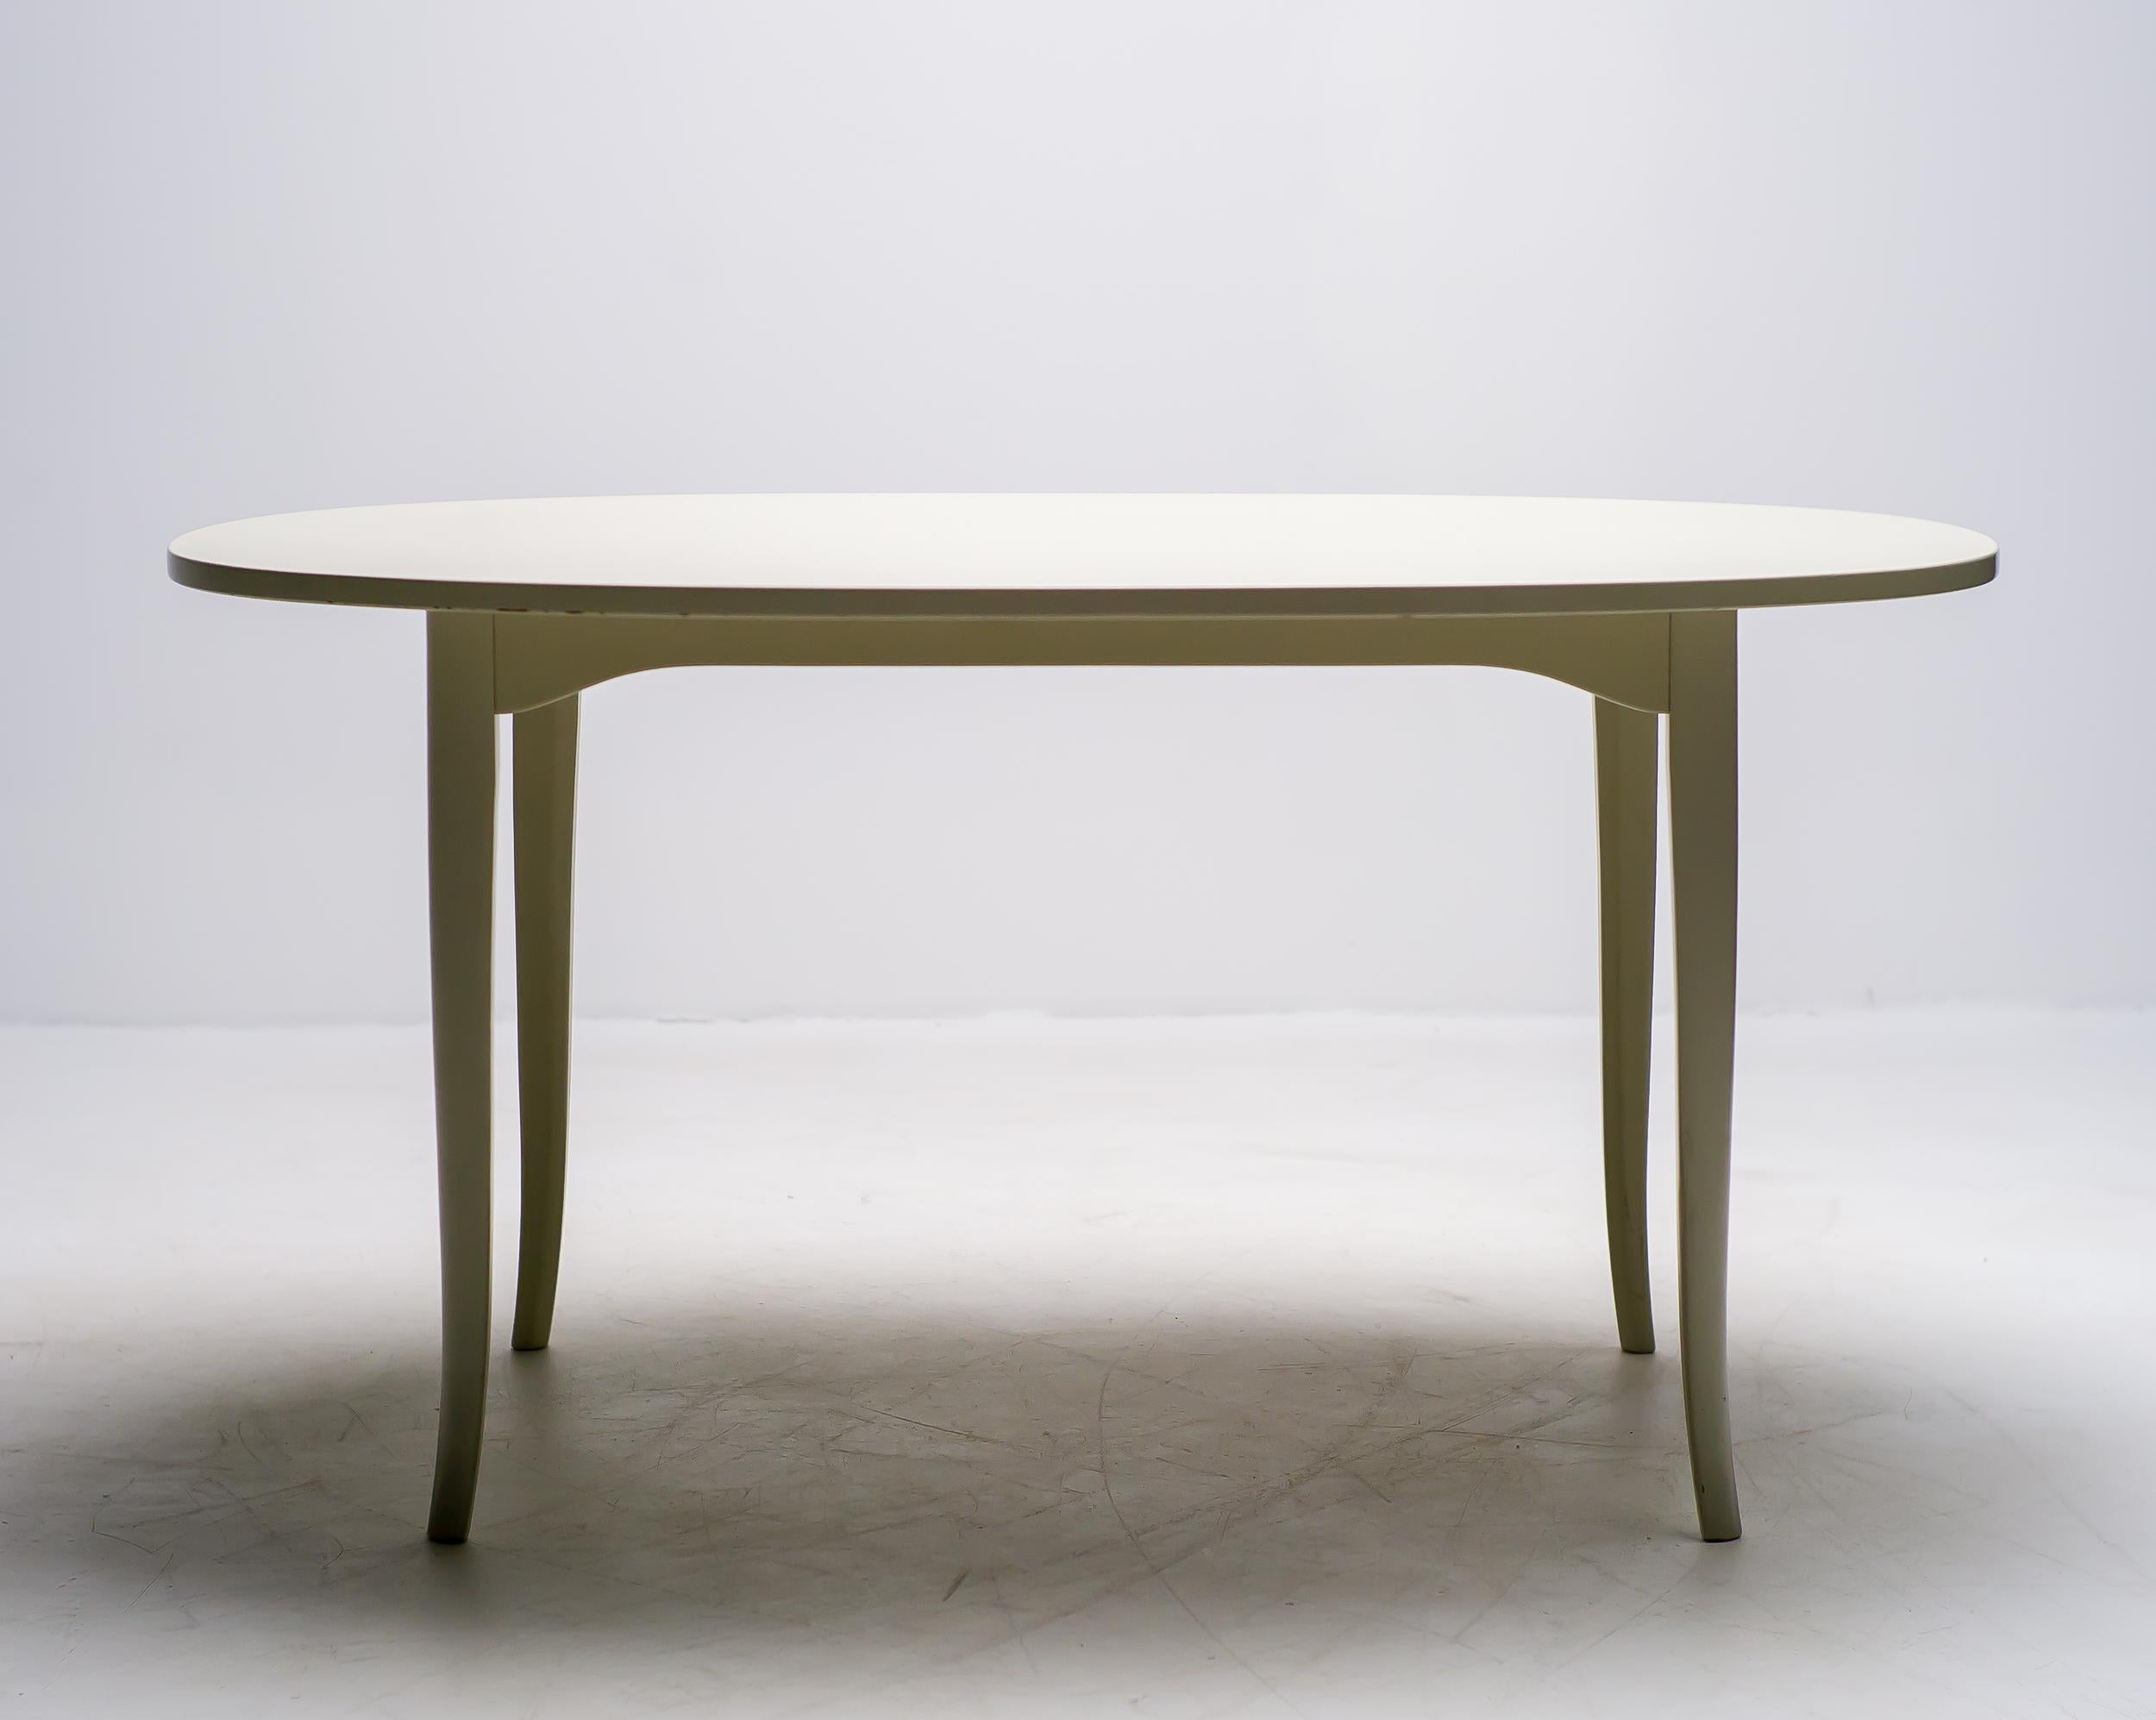 Élégante table d'appoint en acajou laqué blanc osseux, conçue par Carl Malmsten pour Möbel Komponerad AV. 
Marqué d'un médaillon en bronze.

Carl Malmsten (7 décembre 1888 - 13 août 1972) était un designer de meubles, un architecte et un éducateur